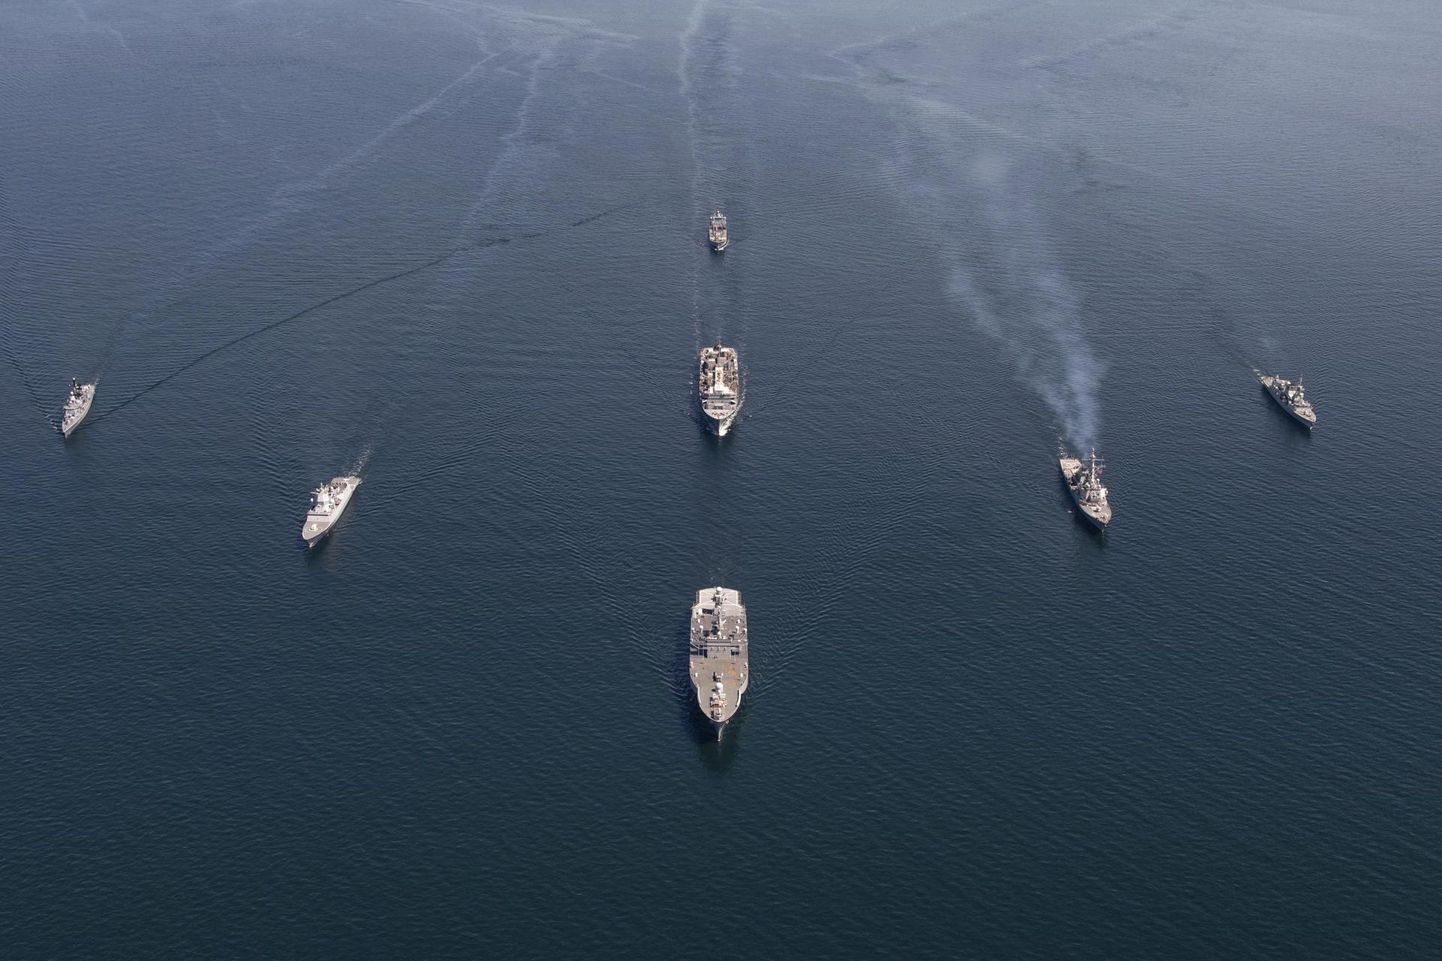 NATO sõjalaevad demonstreerivad iga-aastaste BALTOPS militaarõppuste ajal liitlaste ühtsust ja kaitsetahet.